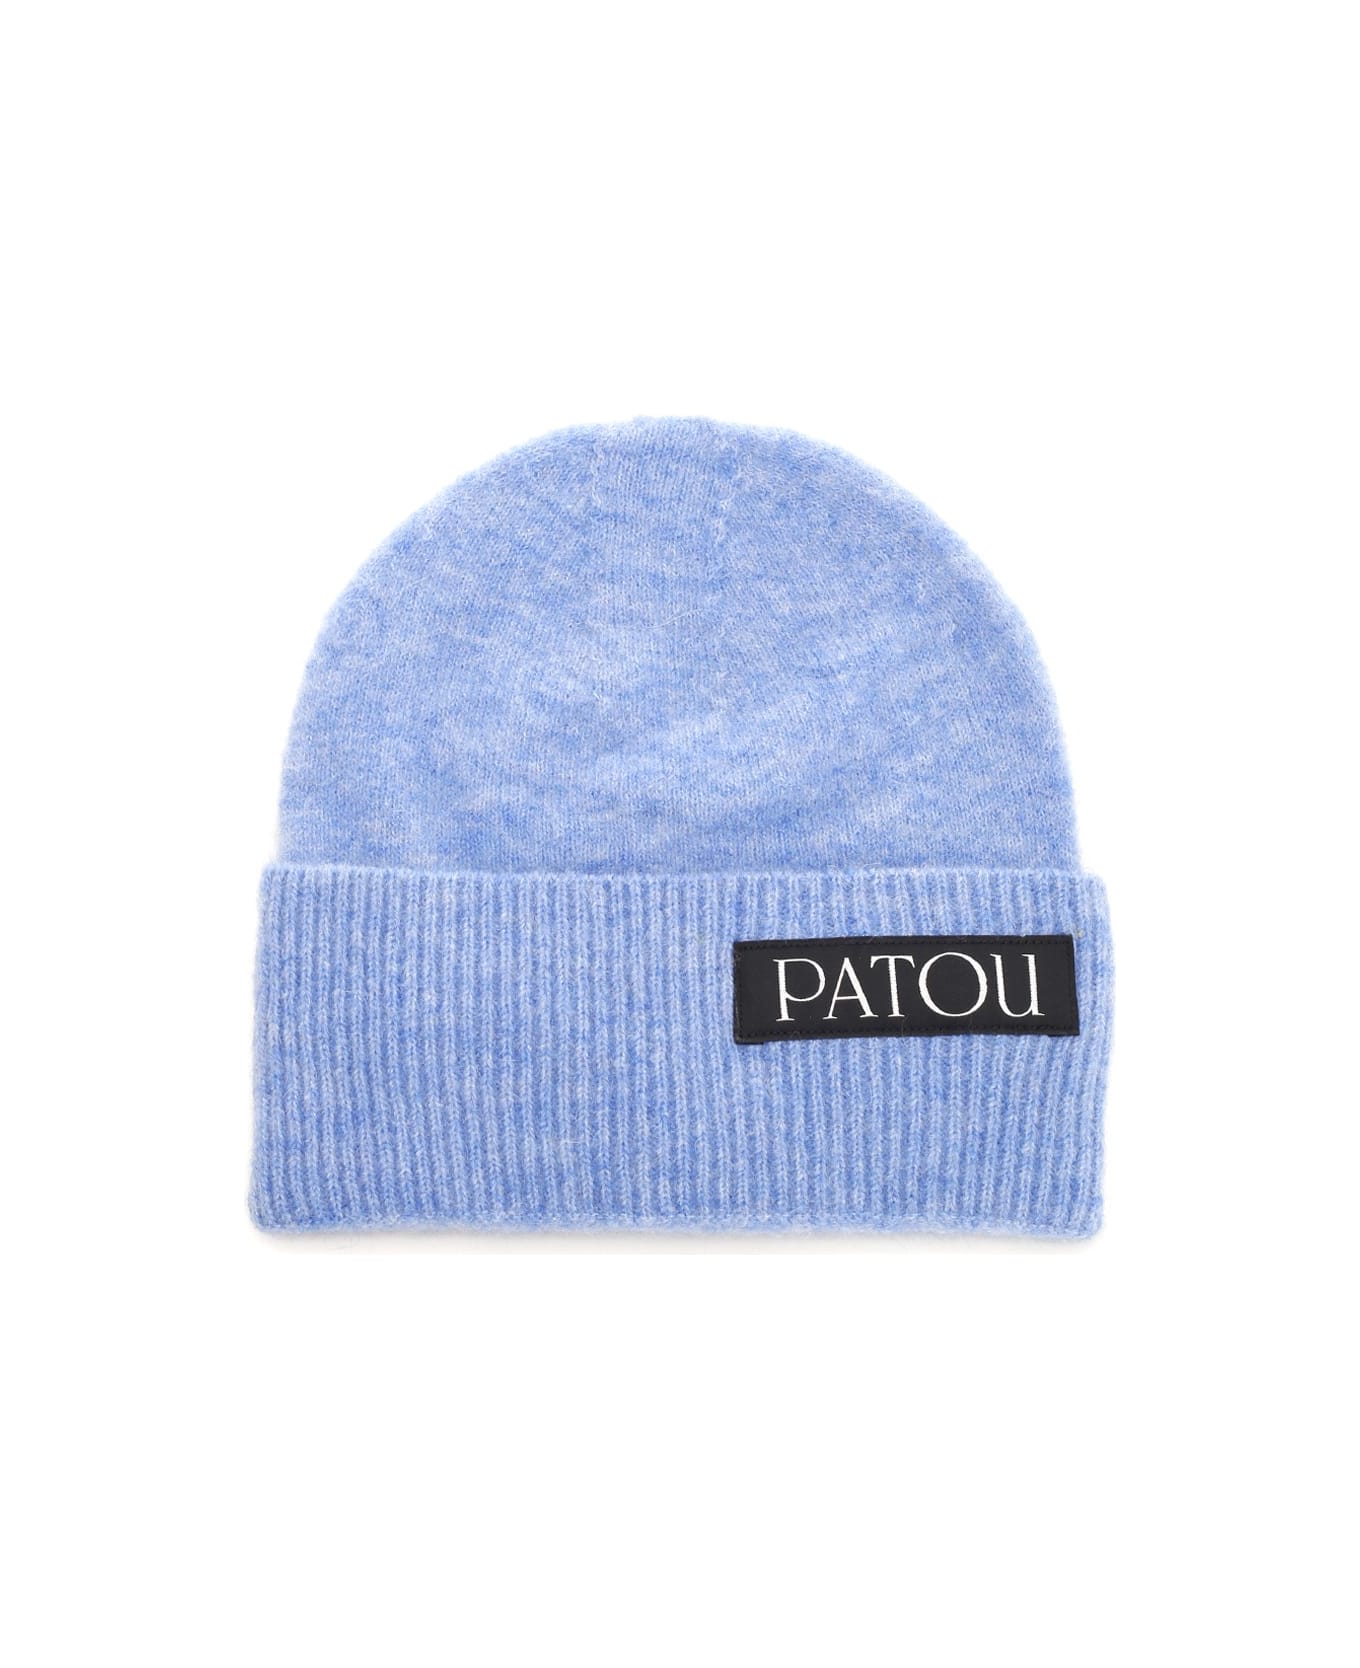 Patou Alpaca Hat - BLUE